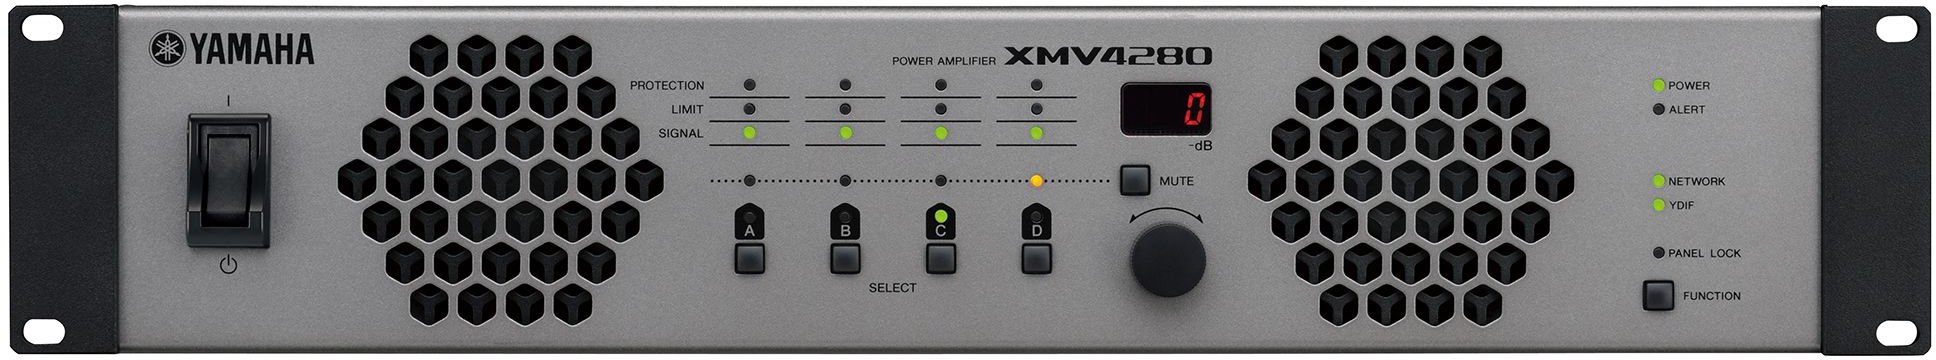 Yamaha XMV4280 - Многоканальный трансляционный усилитель мощности